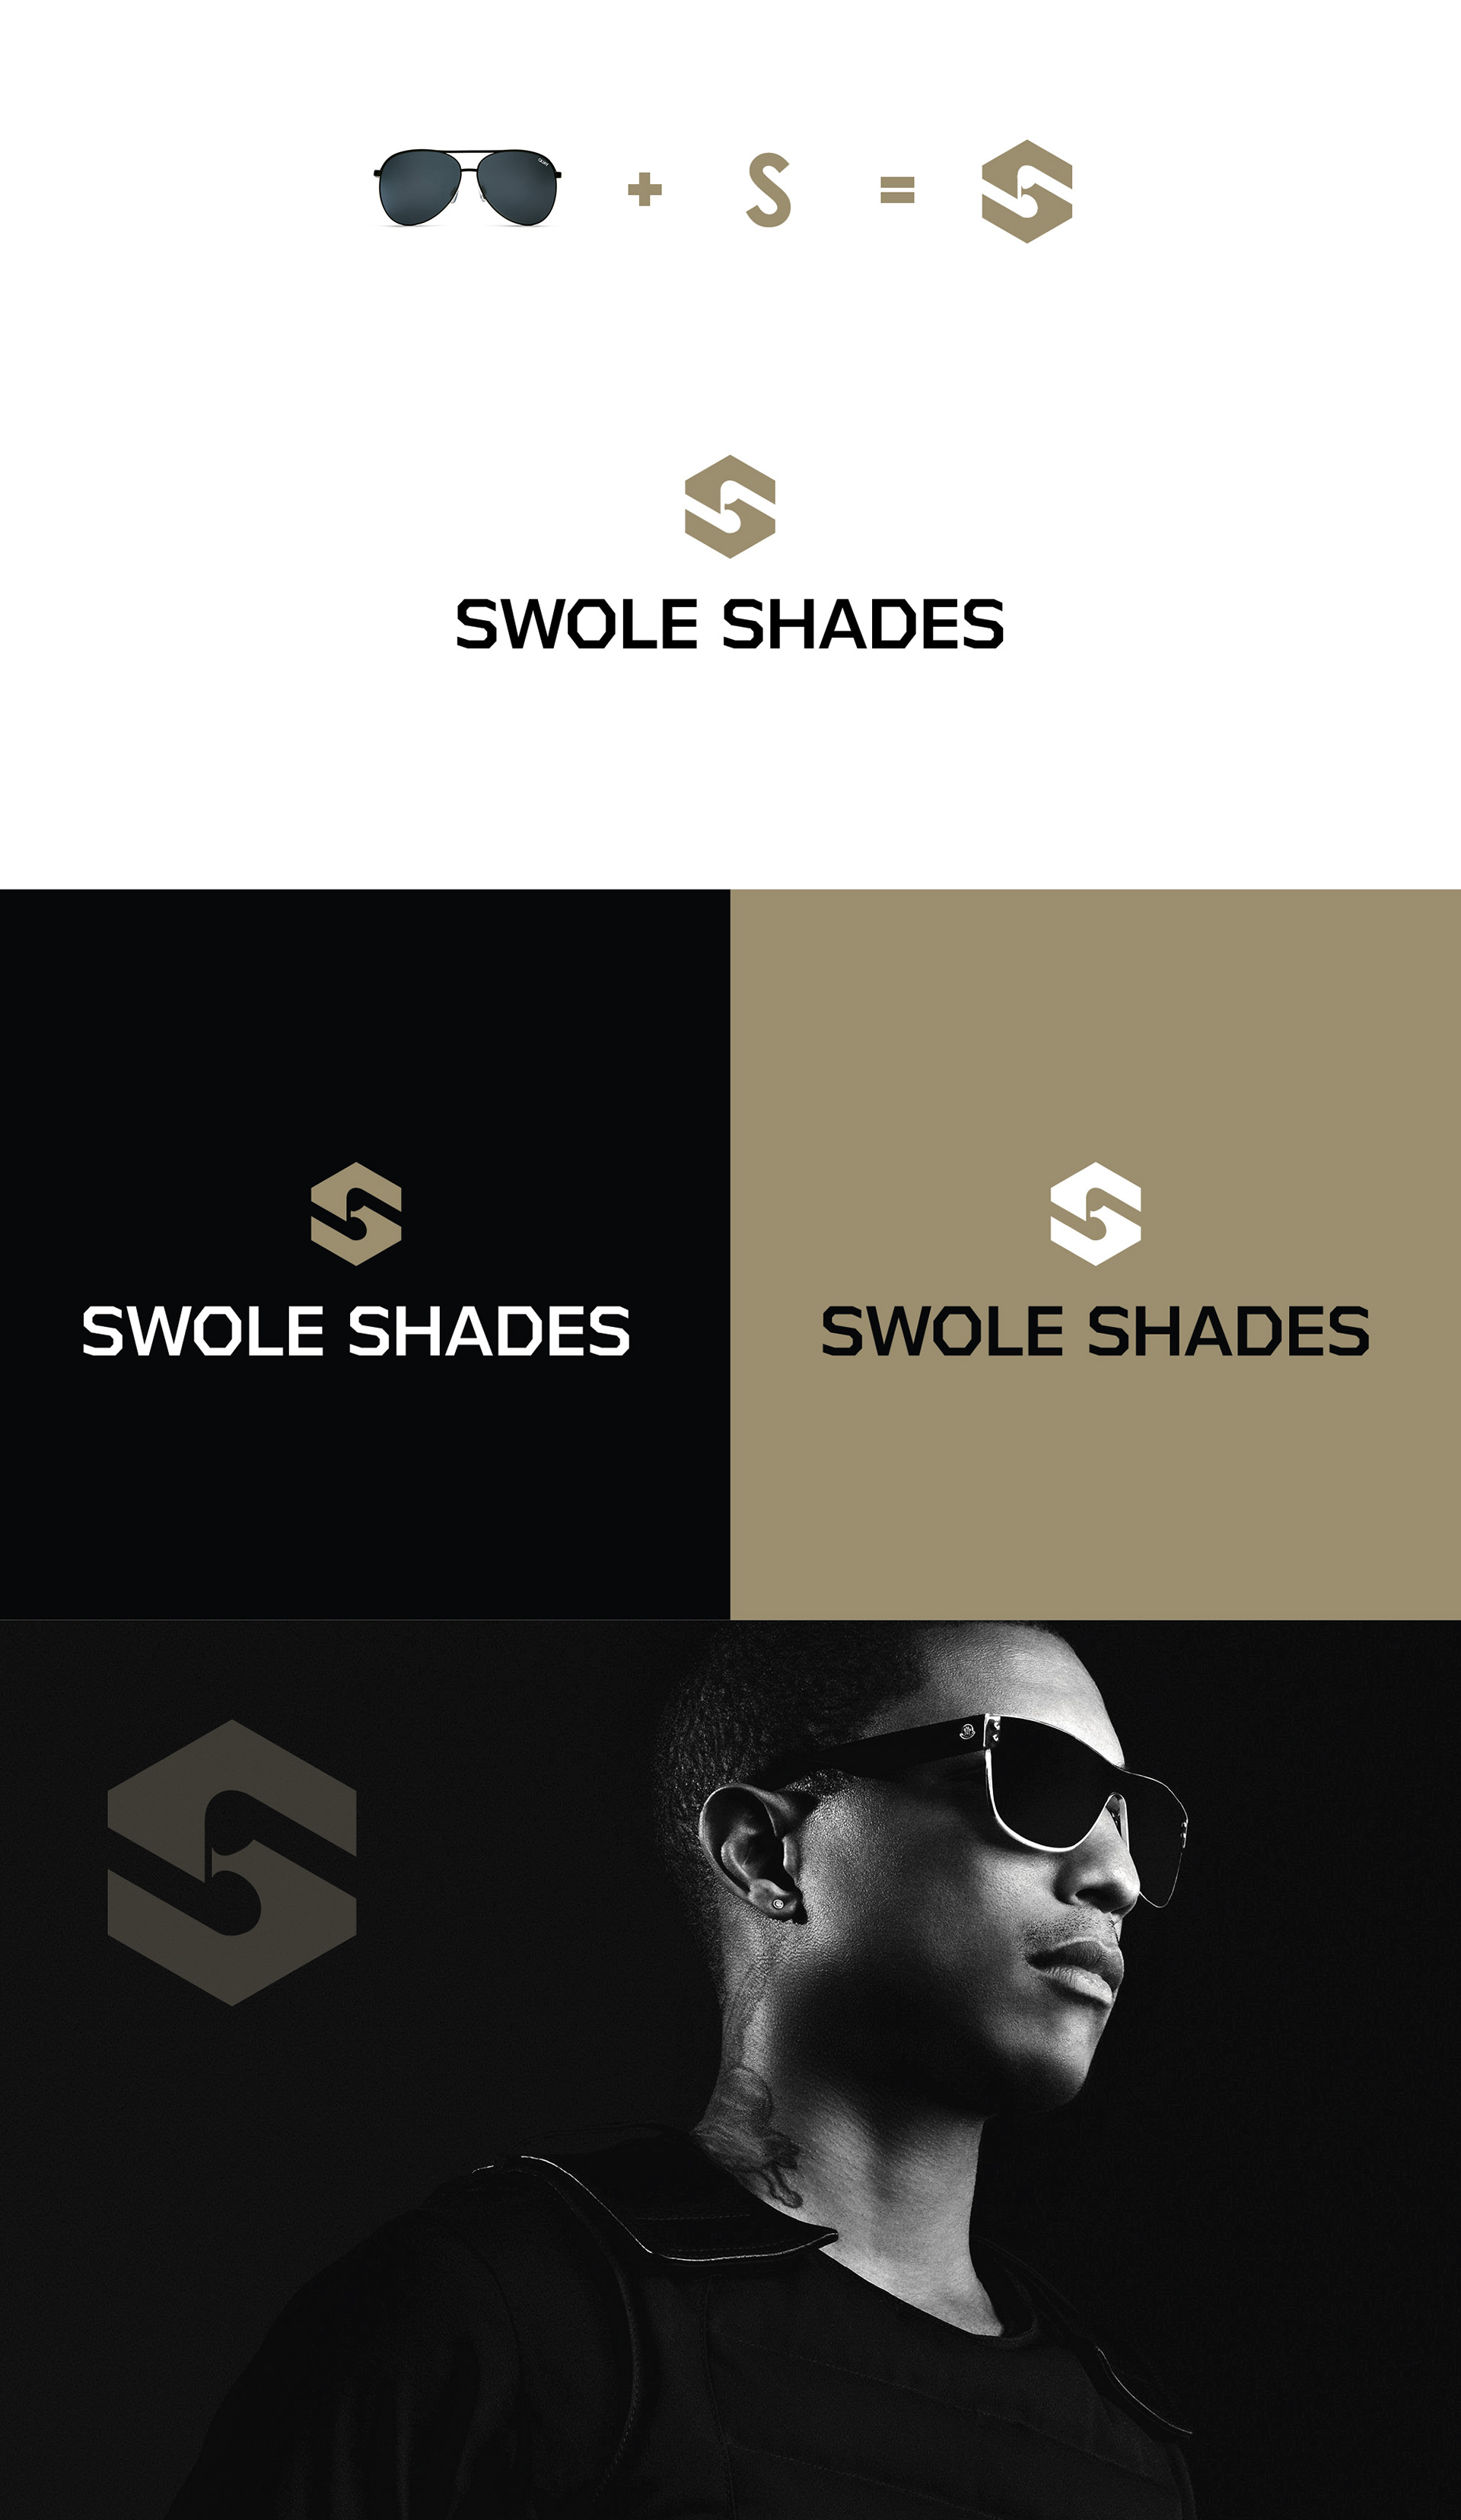 eyewear logo | Eyewear logo, ? logo, Sunglasses logo design